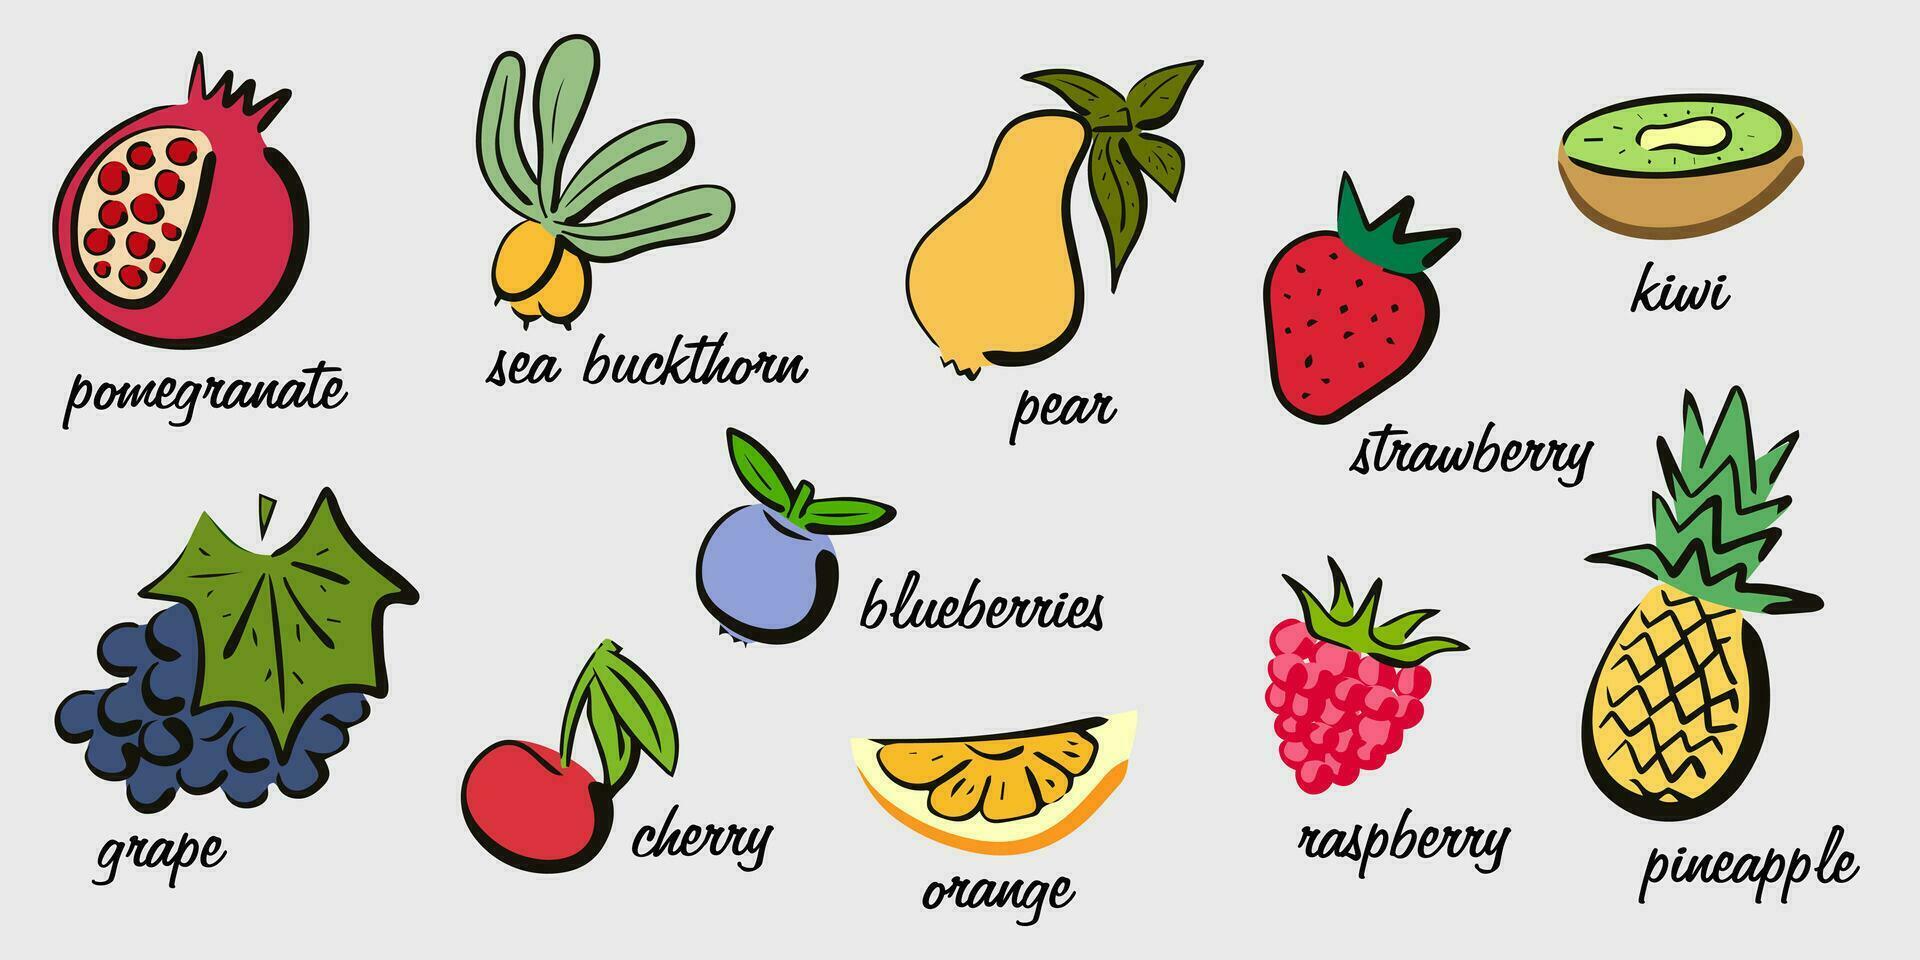 dibujado a mano retro frutas y bayas. granja eco productos culinario bandera. educativo póster con el nombres de frutas y bayas vector